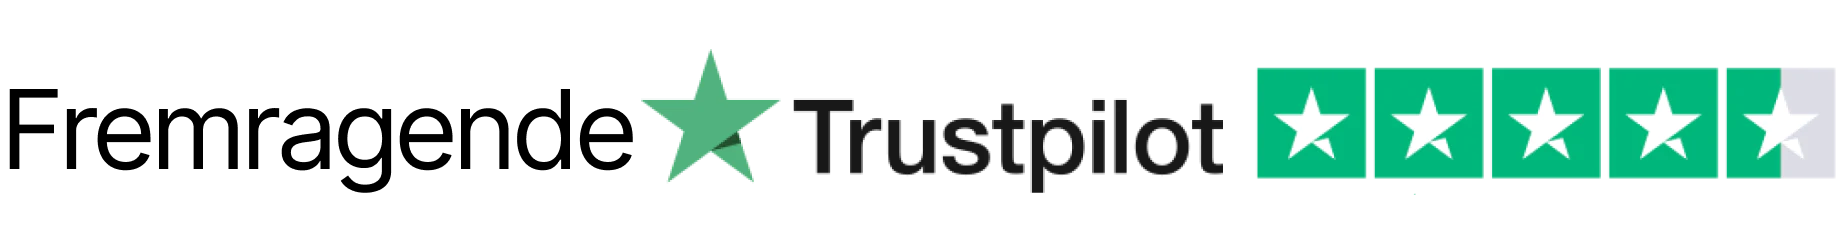 Upcart Trust Badge